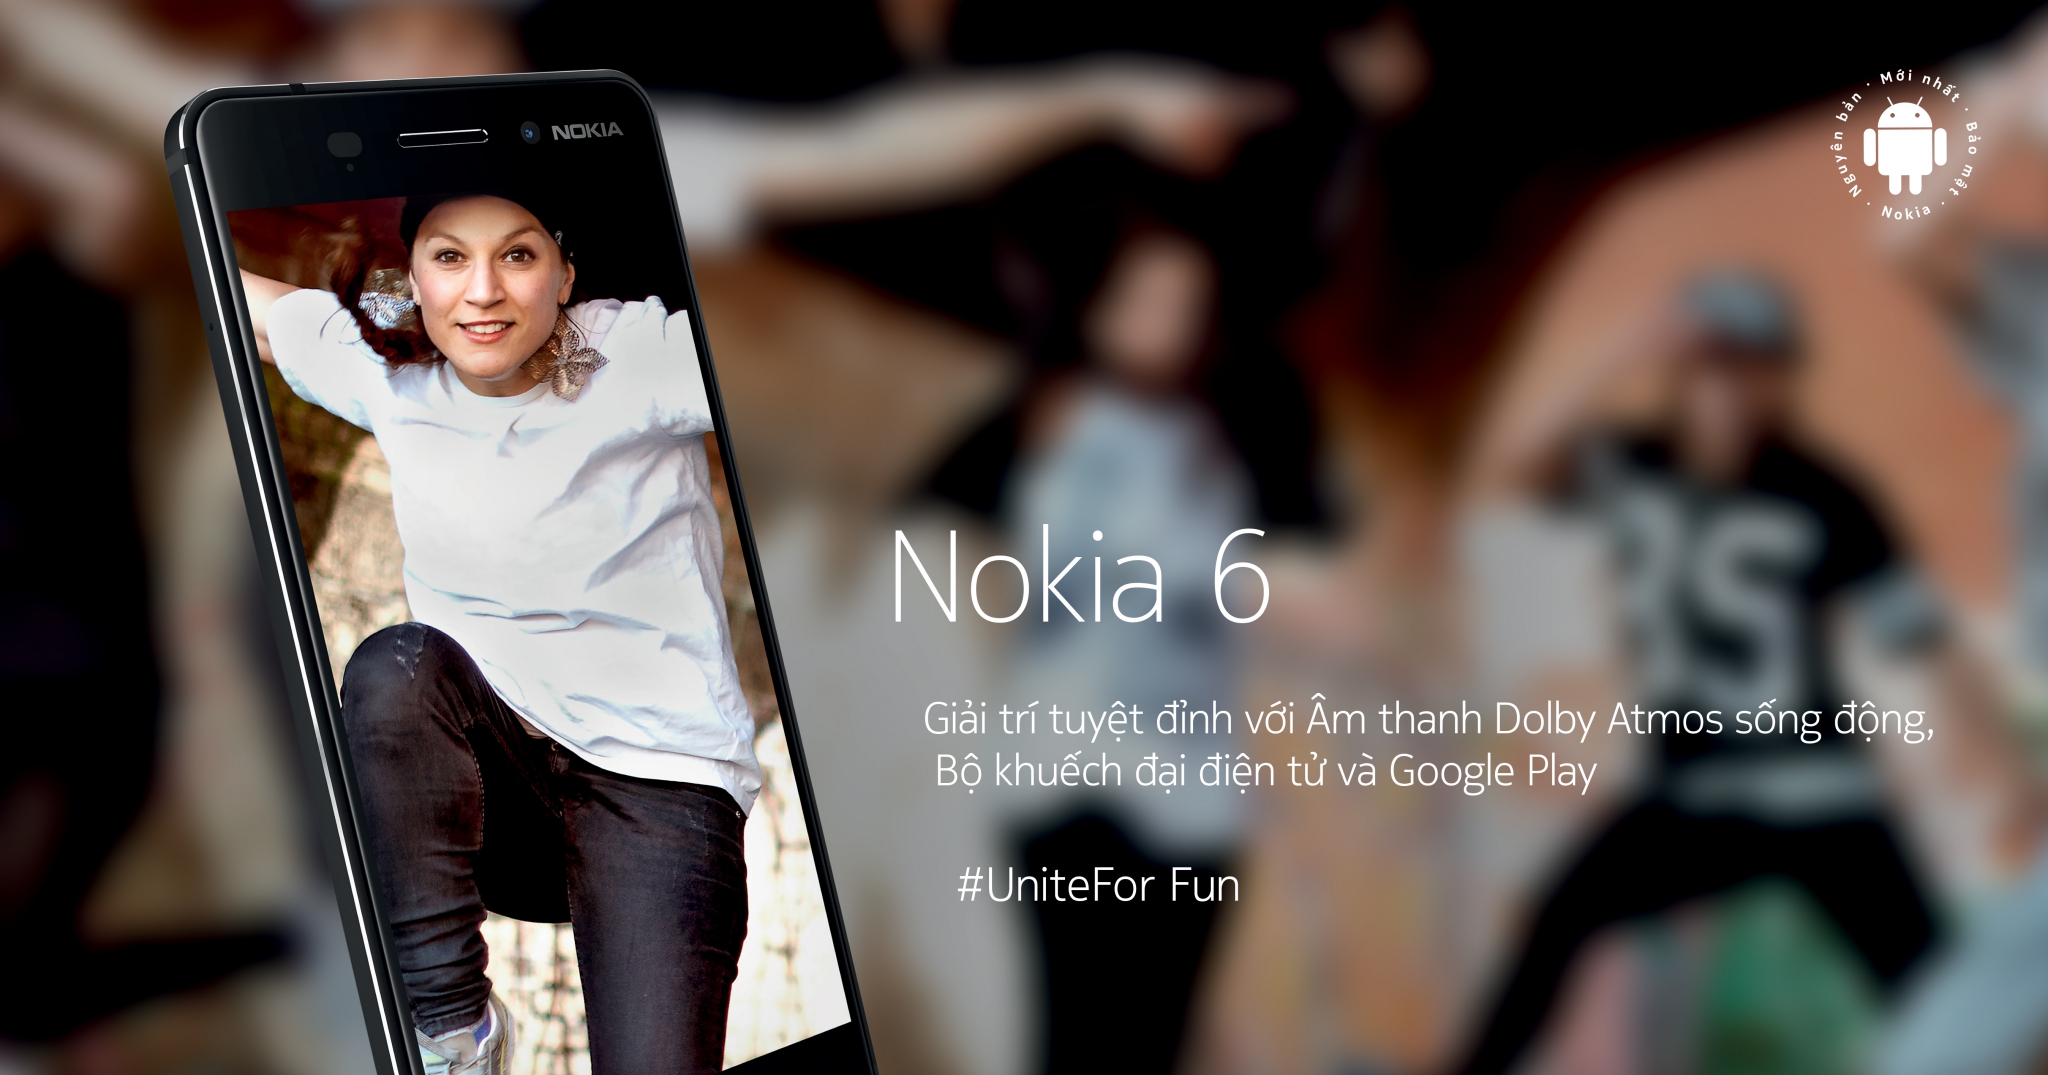 [QC] Nokia 6 - Điện thoại tầm trung có sức hút nhất với người dùng